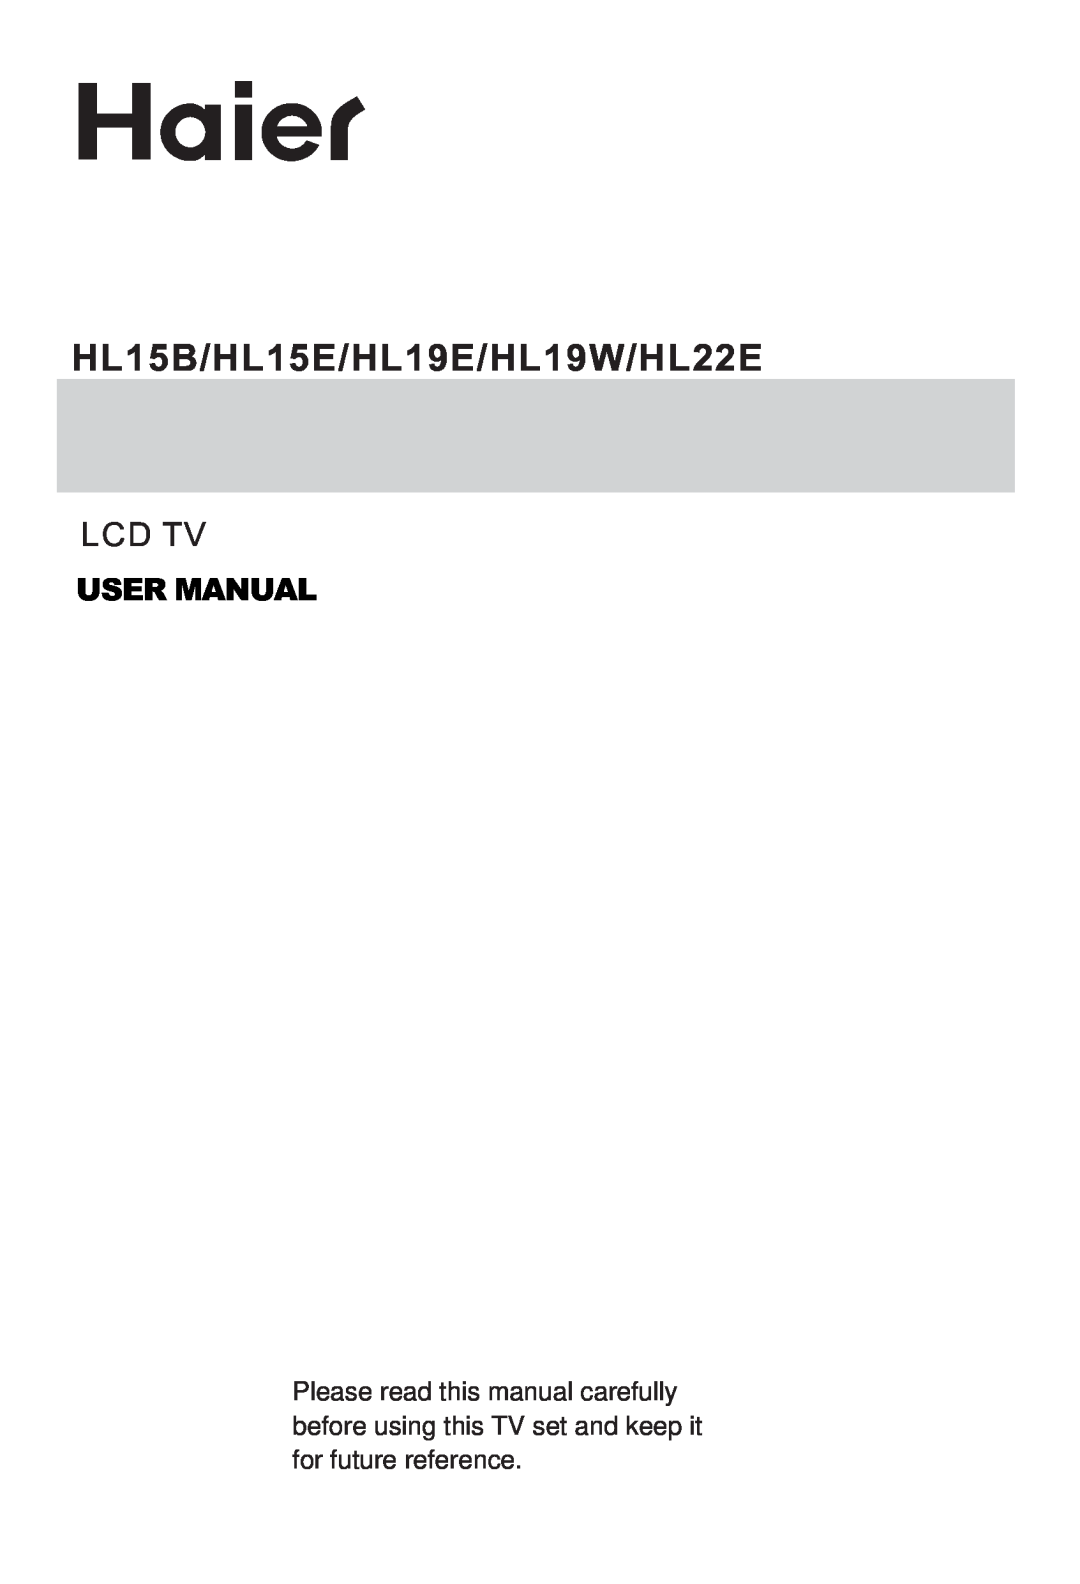 Haier user manual HL15B/HL15E/HL19E/HL19W/HL22E, Lcd Tv, User Manual 